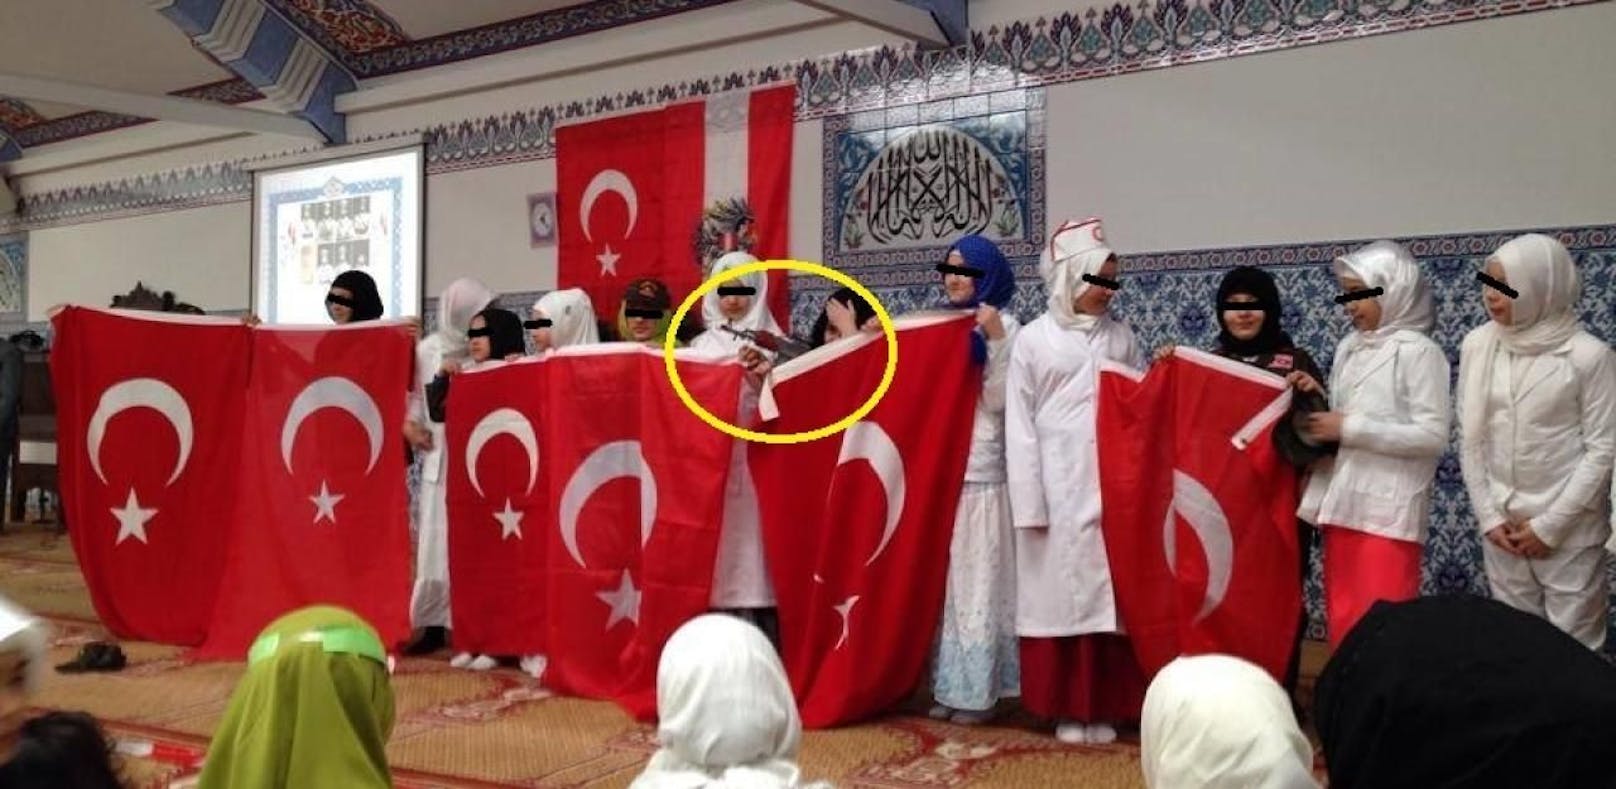 Moschee: Foto zeigt Mädchen mit Waffe